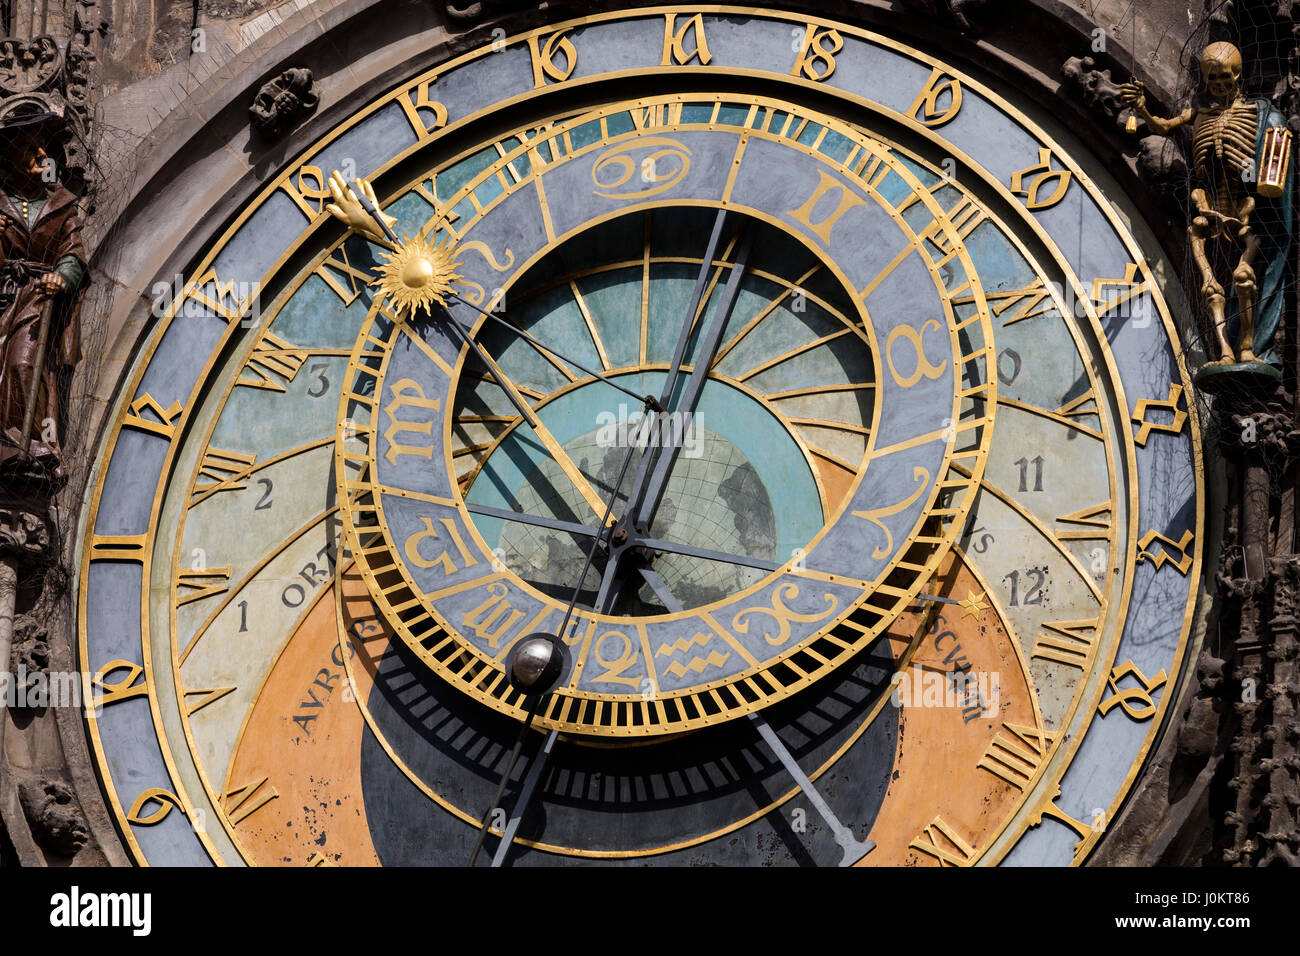 Hôtel de Ville de Prague, l'horloge orloj Prague également ou horloge astronomique de Prague, Pražský orloj, Prague, République Tchèque Banque D'Images